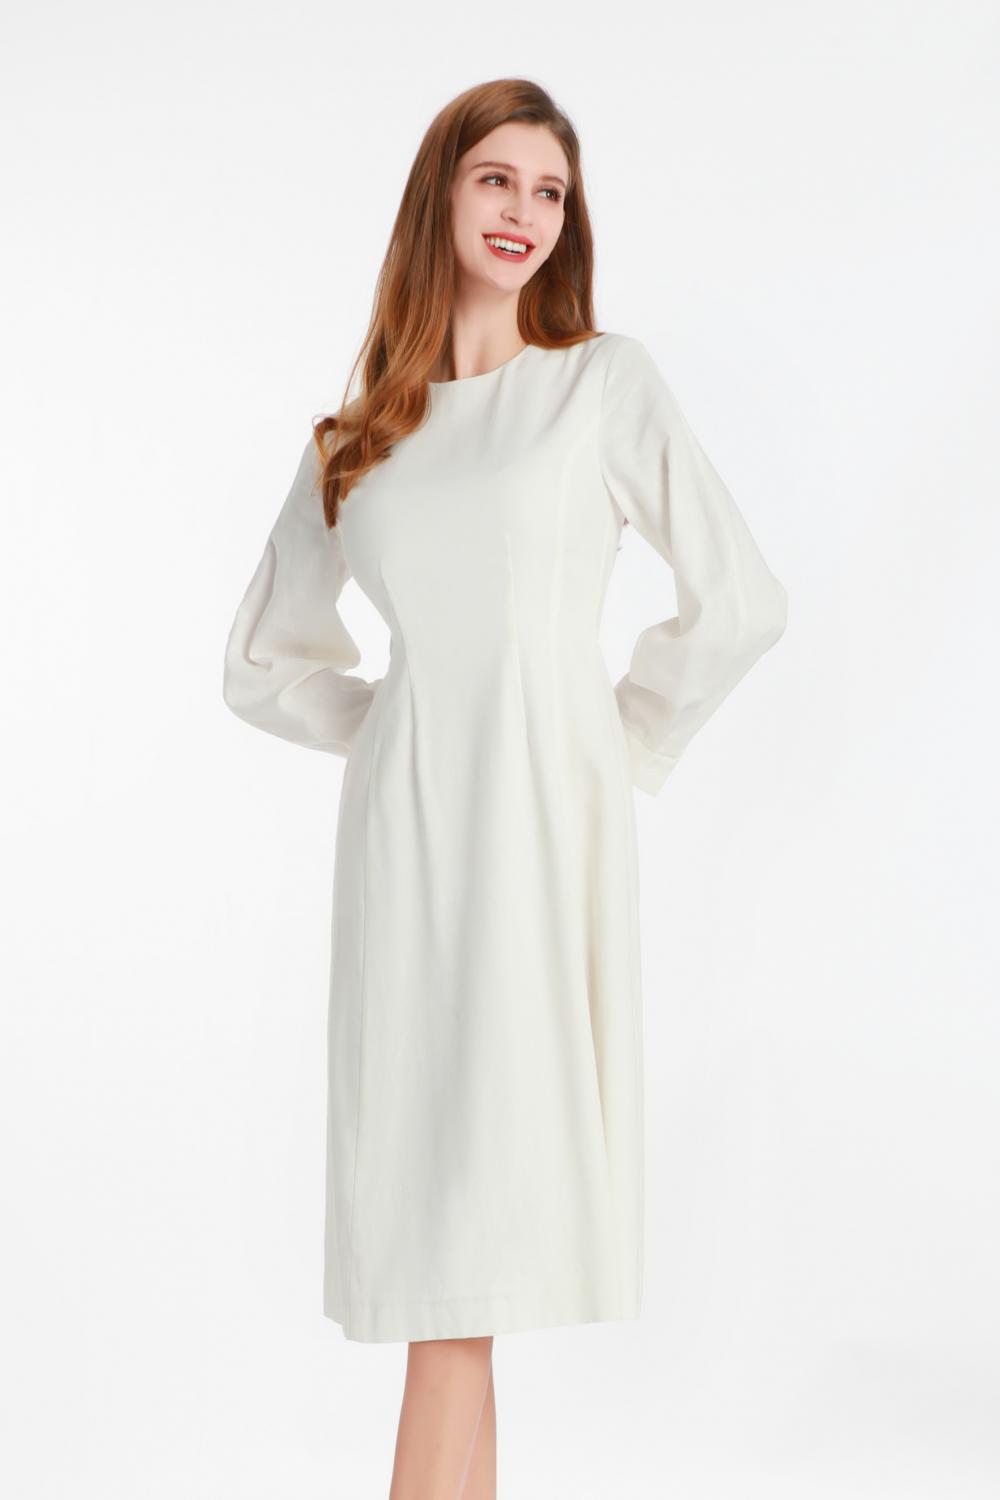 小さな丸い襟付きの白い長袖のドレス